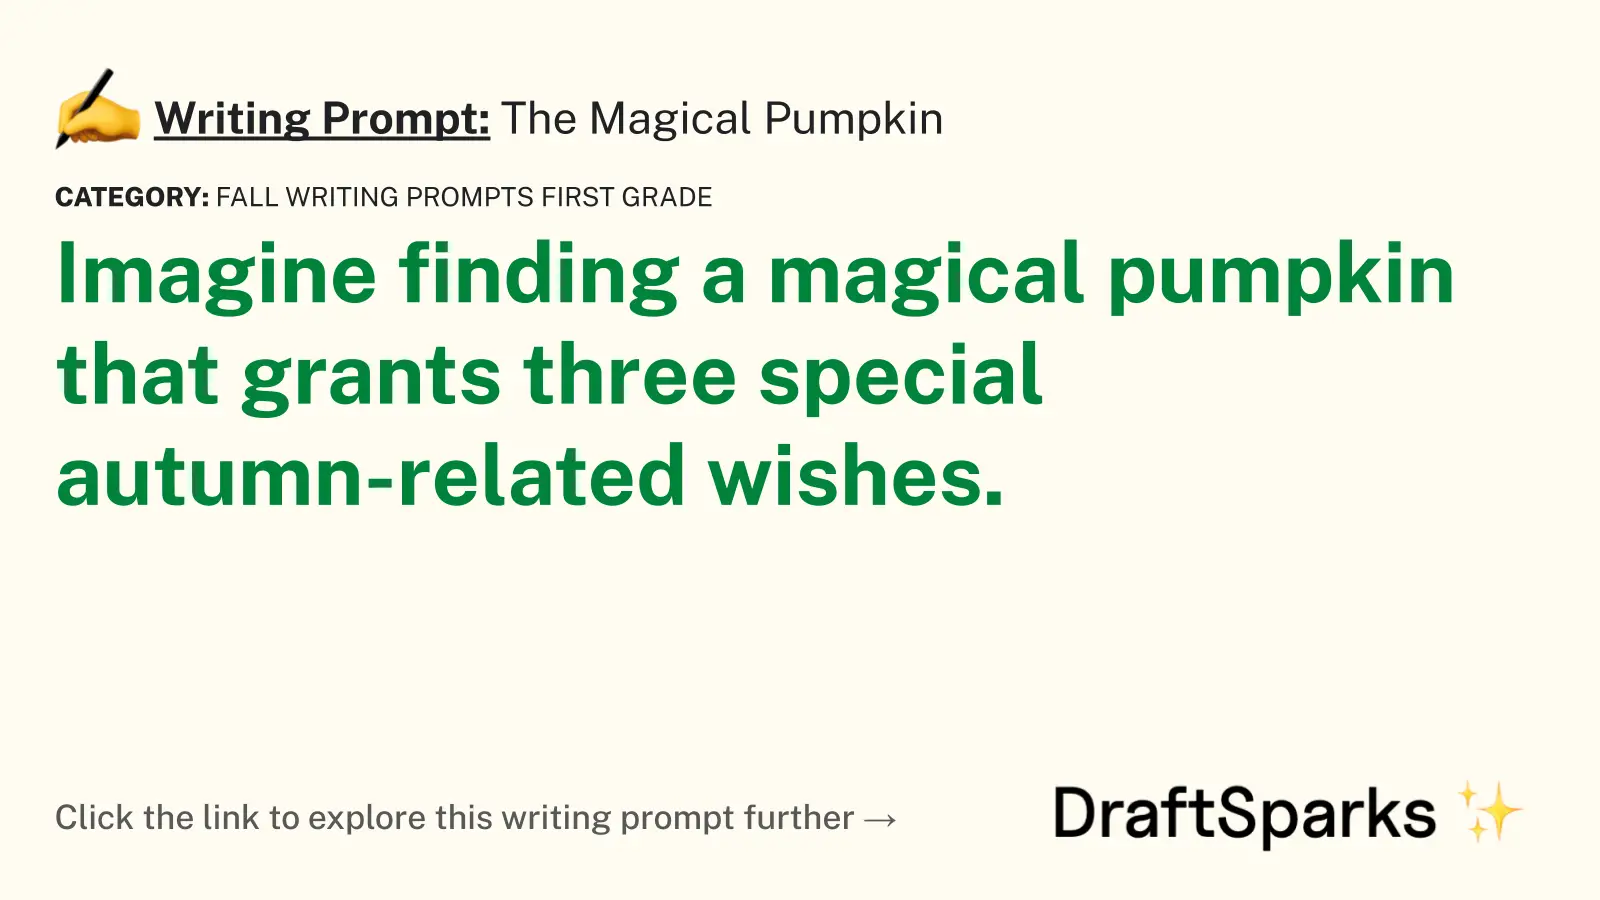 The Magical Pumpkin